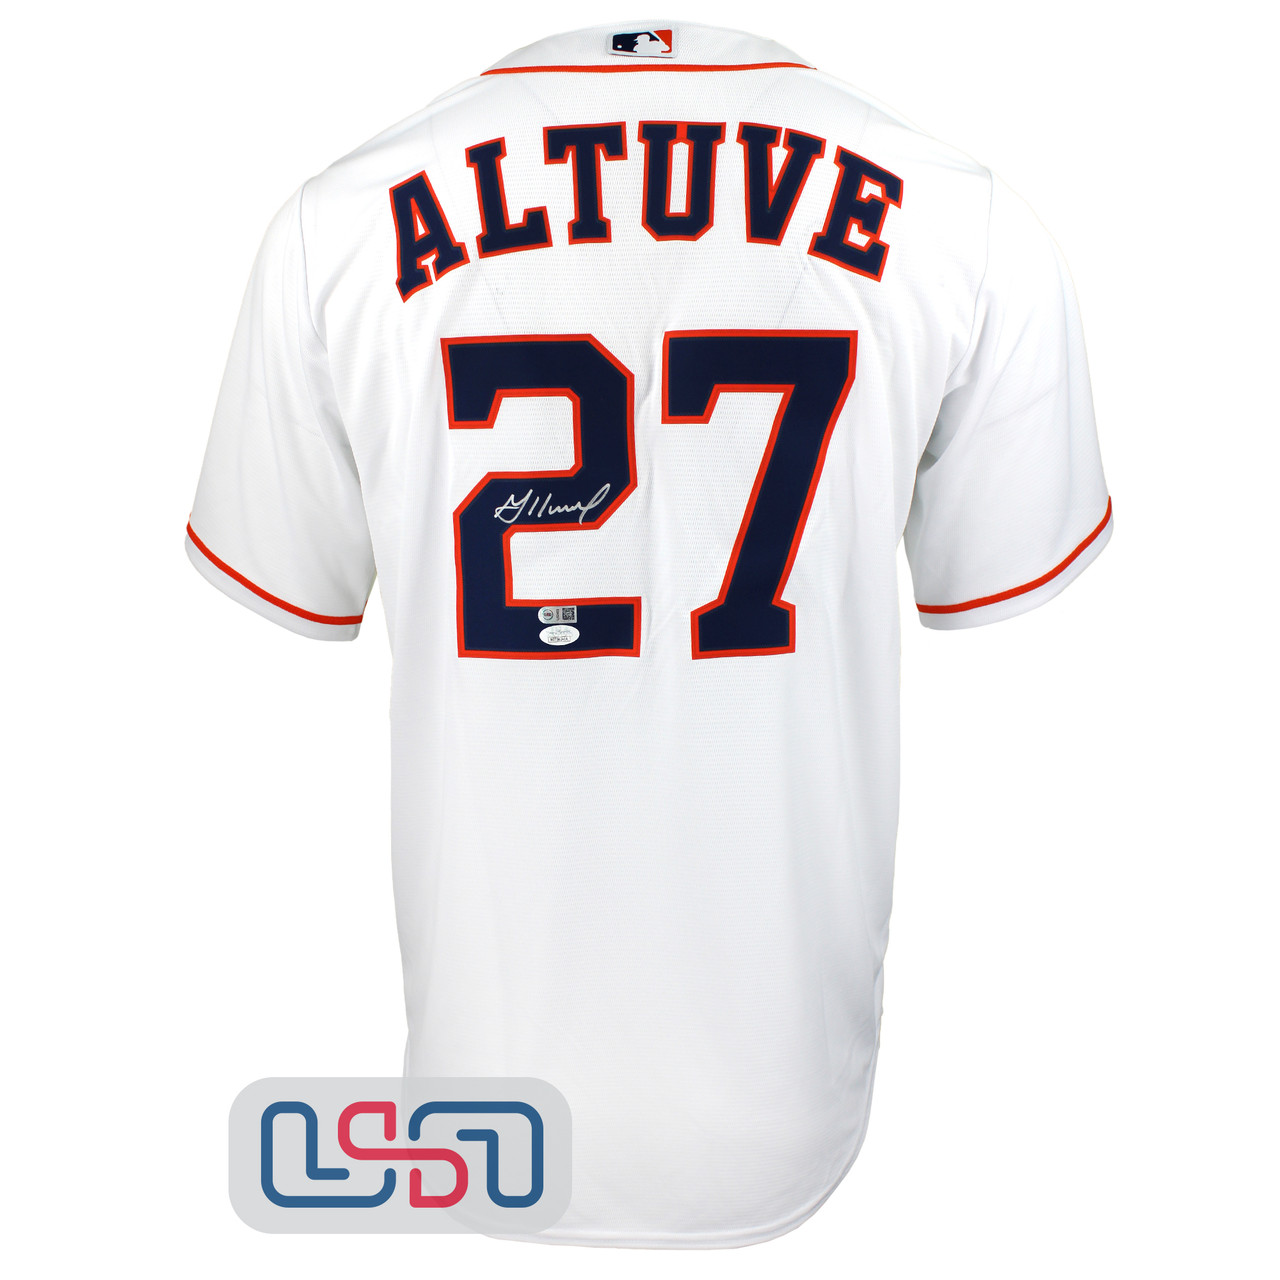 Jose Altuve Autographed Authentic Astros Jersey